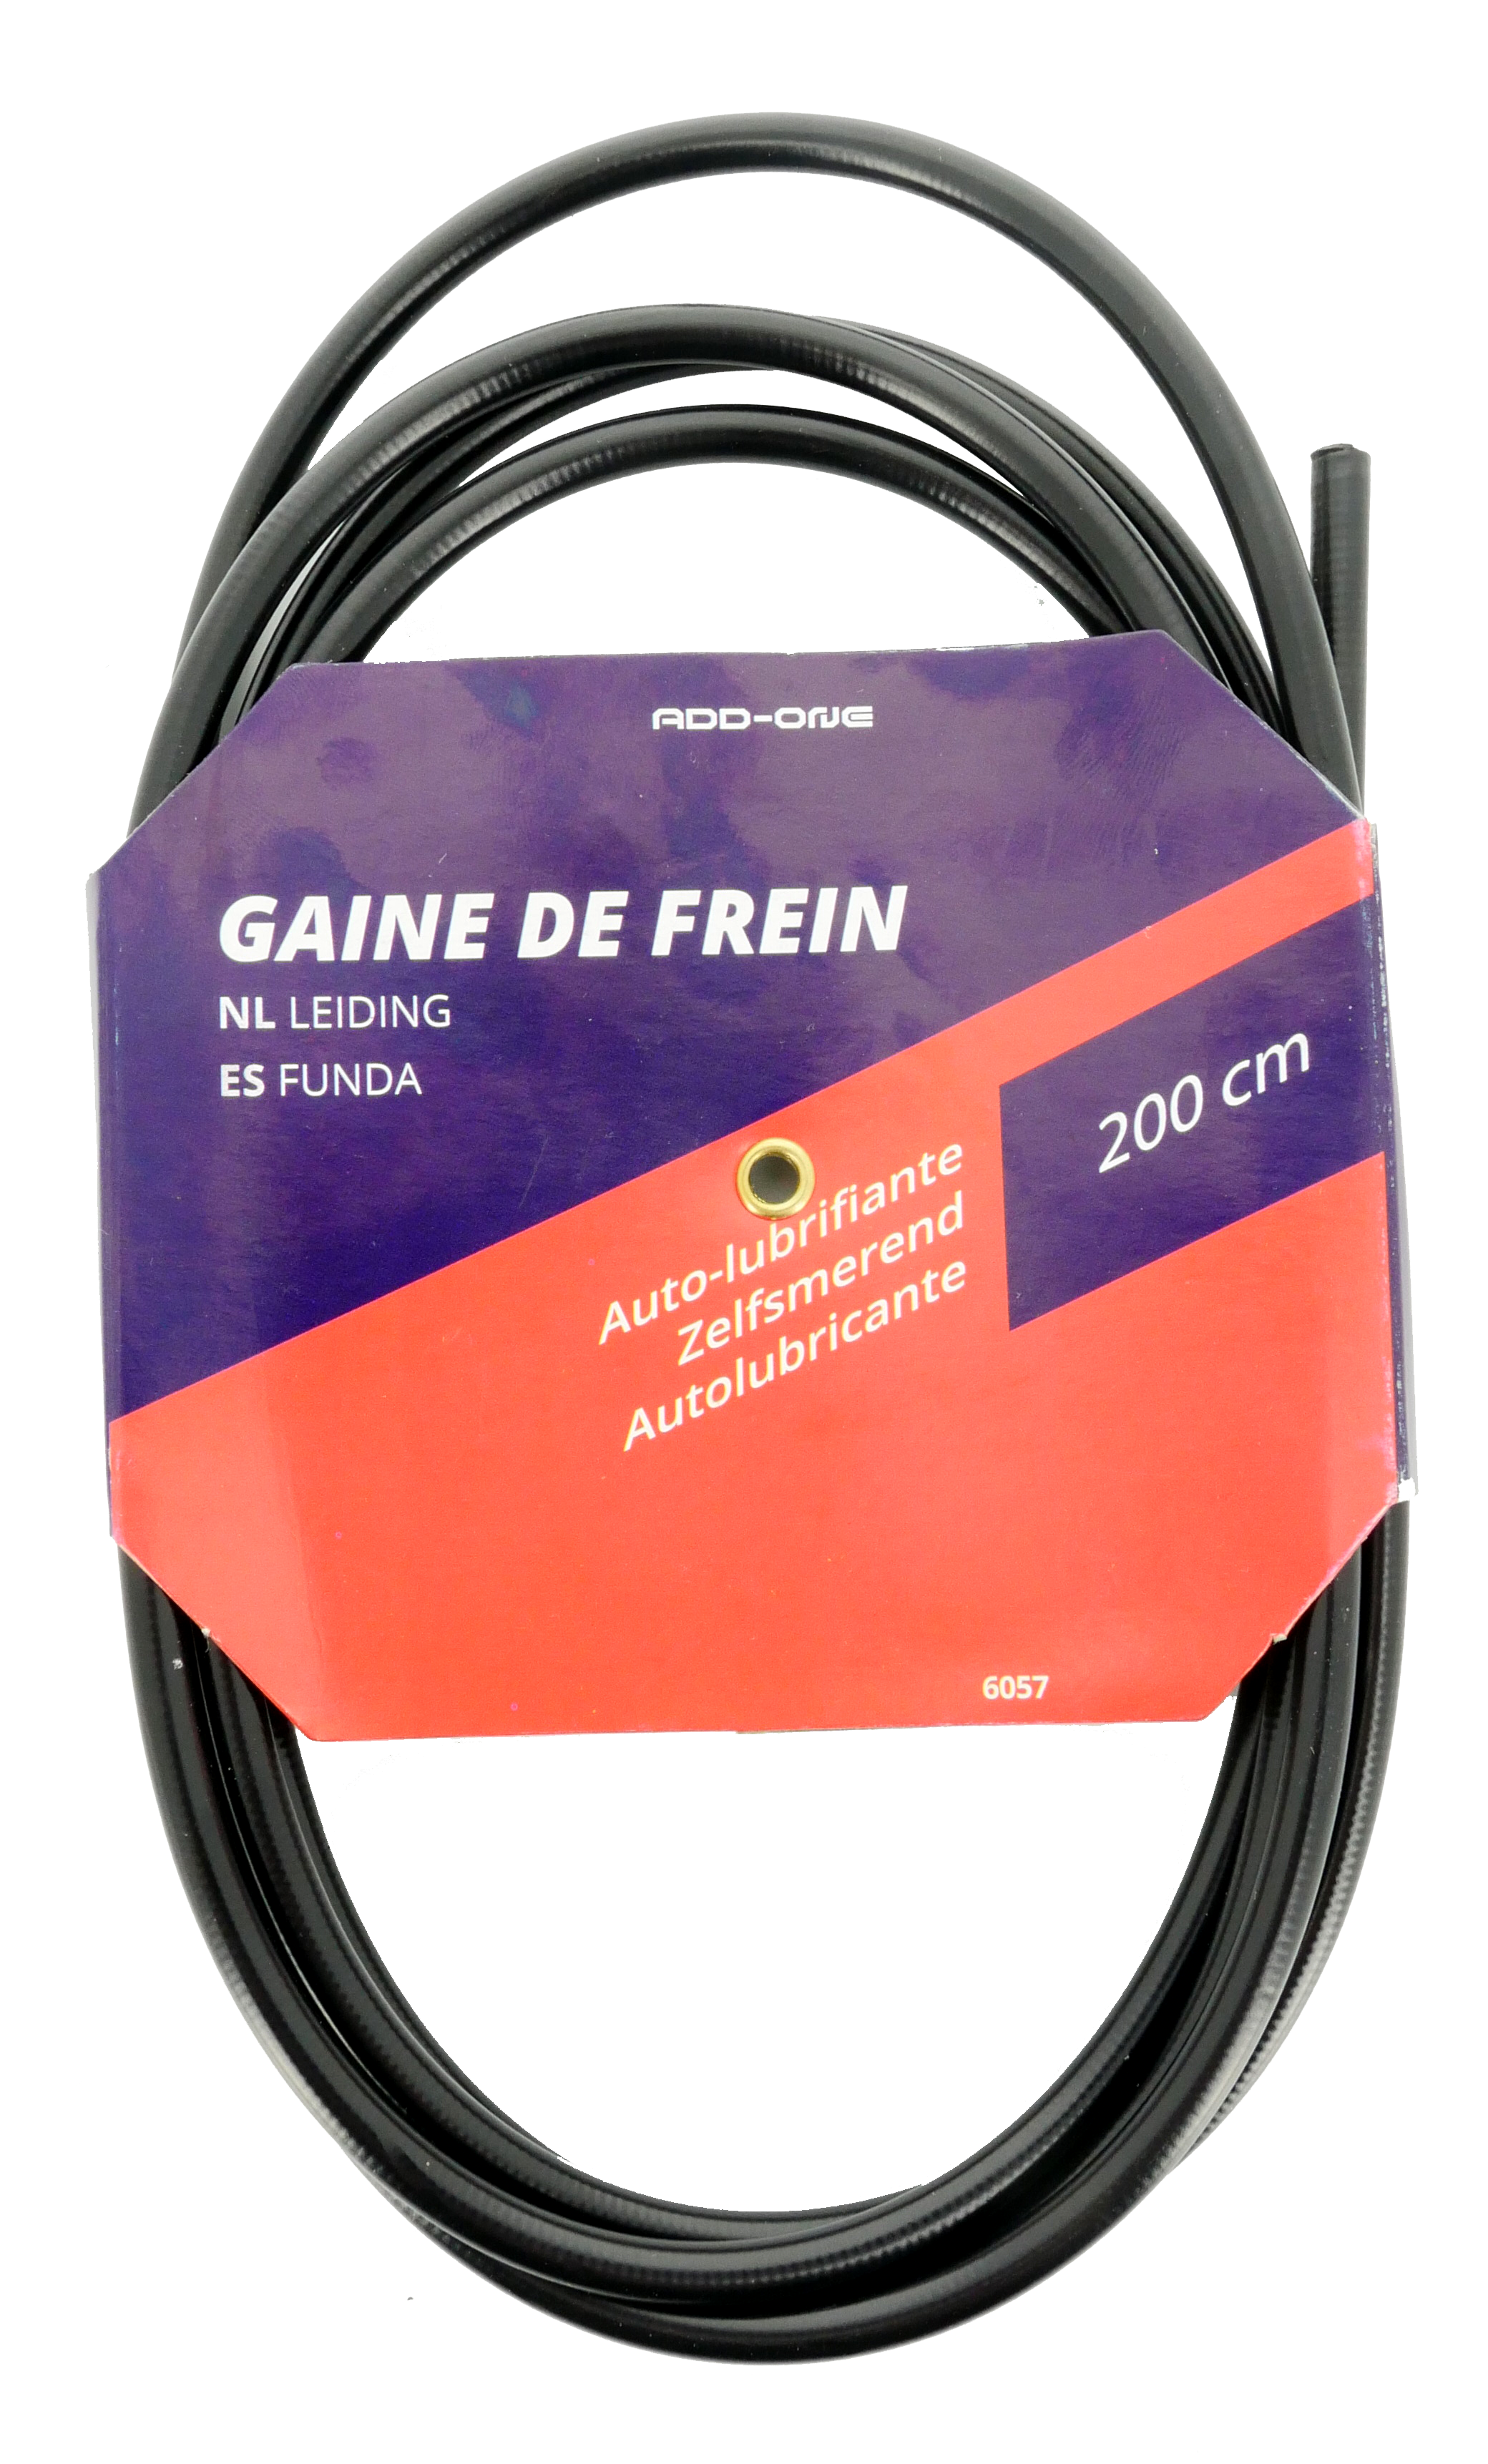 Add-one GAINE DE FREIN AUTOLUBRIFIANTE 2M